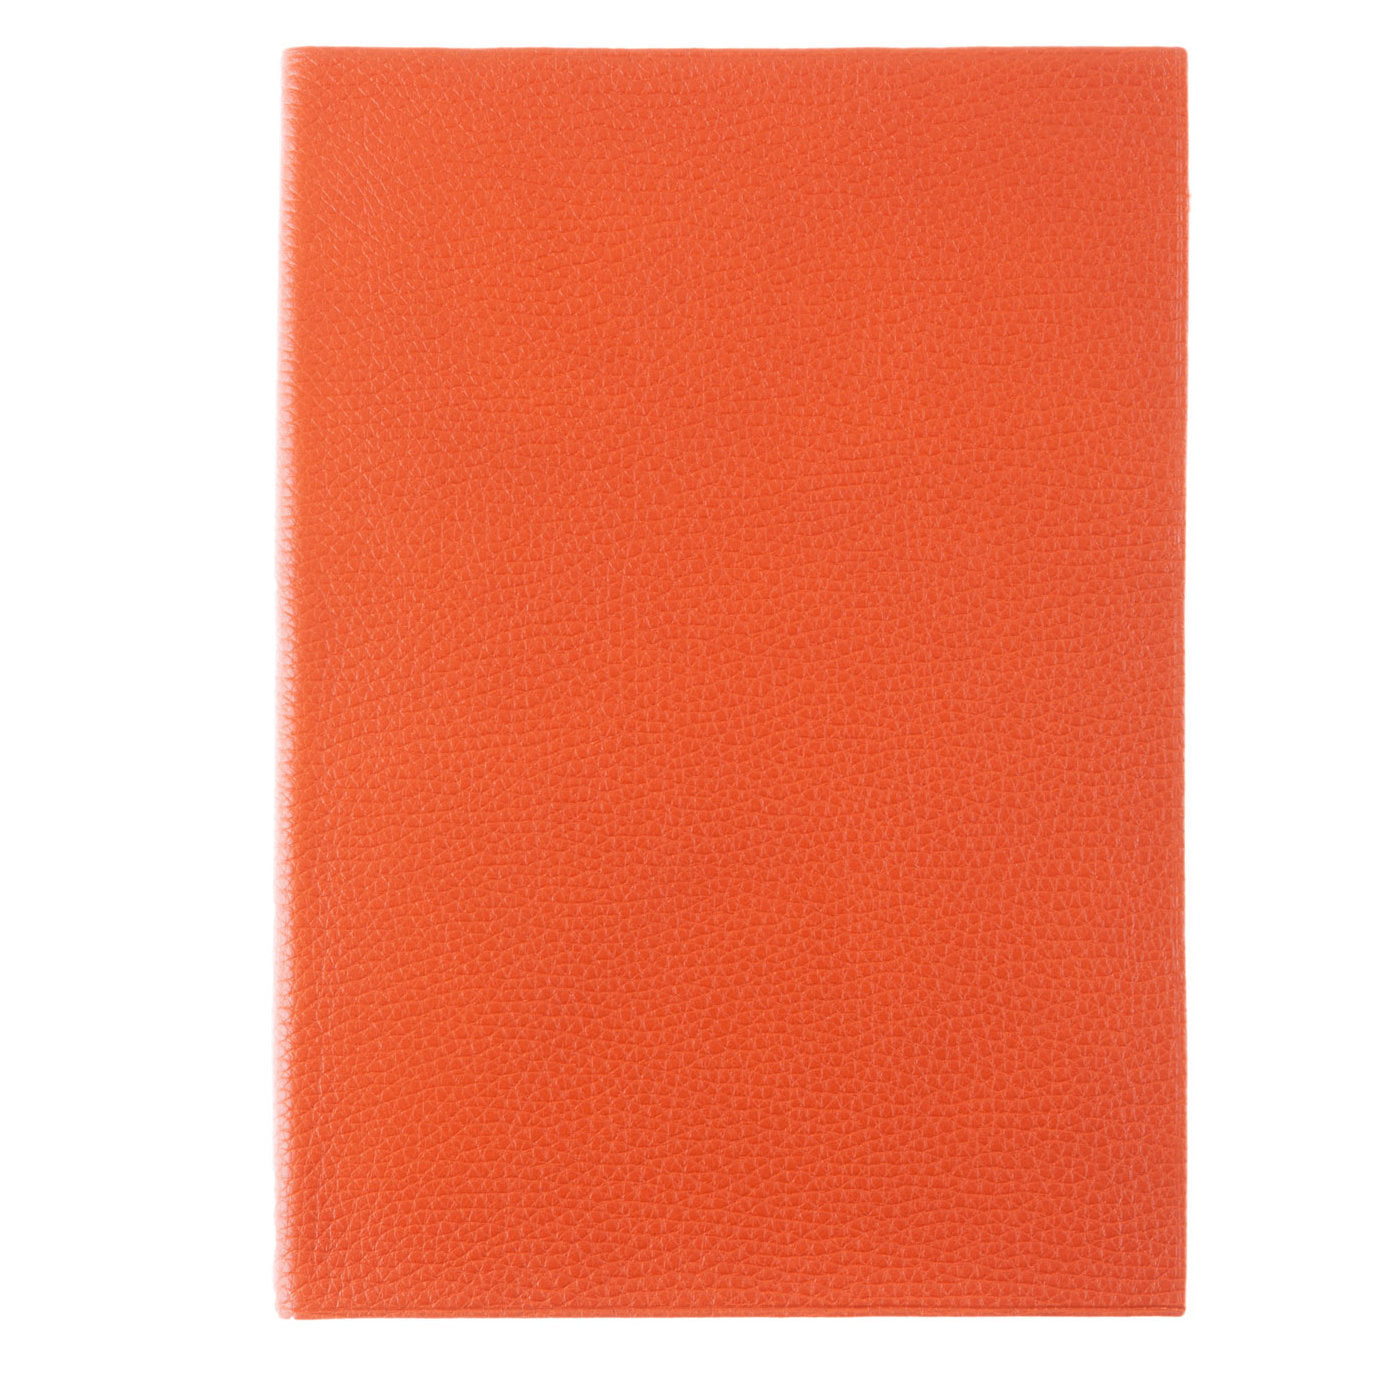 Cuaderno de cuero naranja - Vista alternativa 1